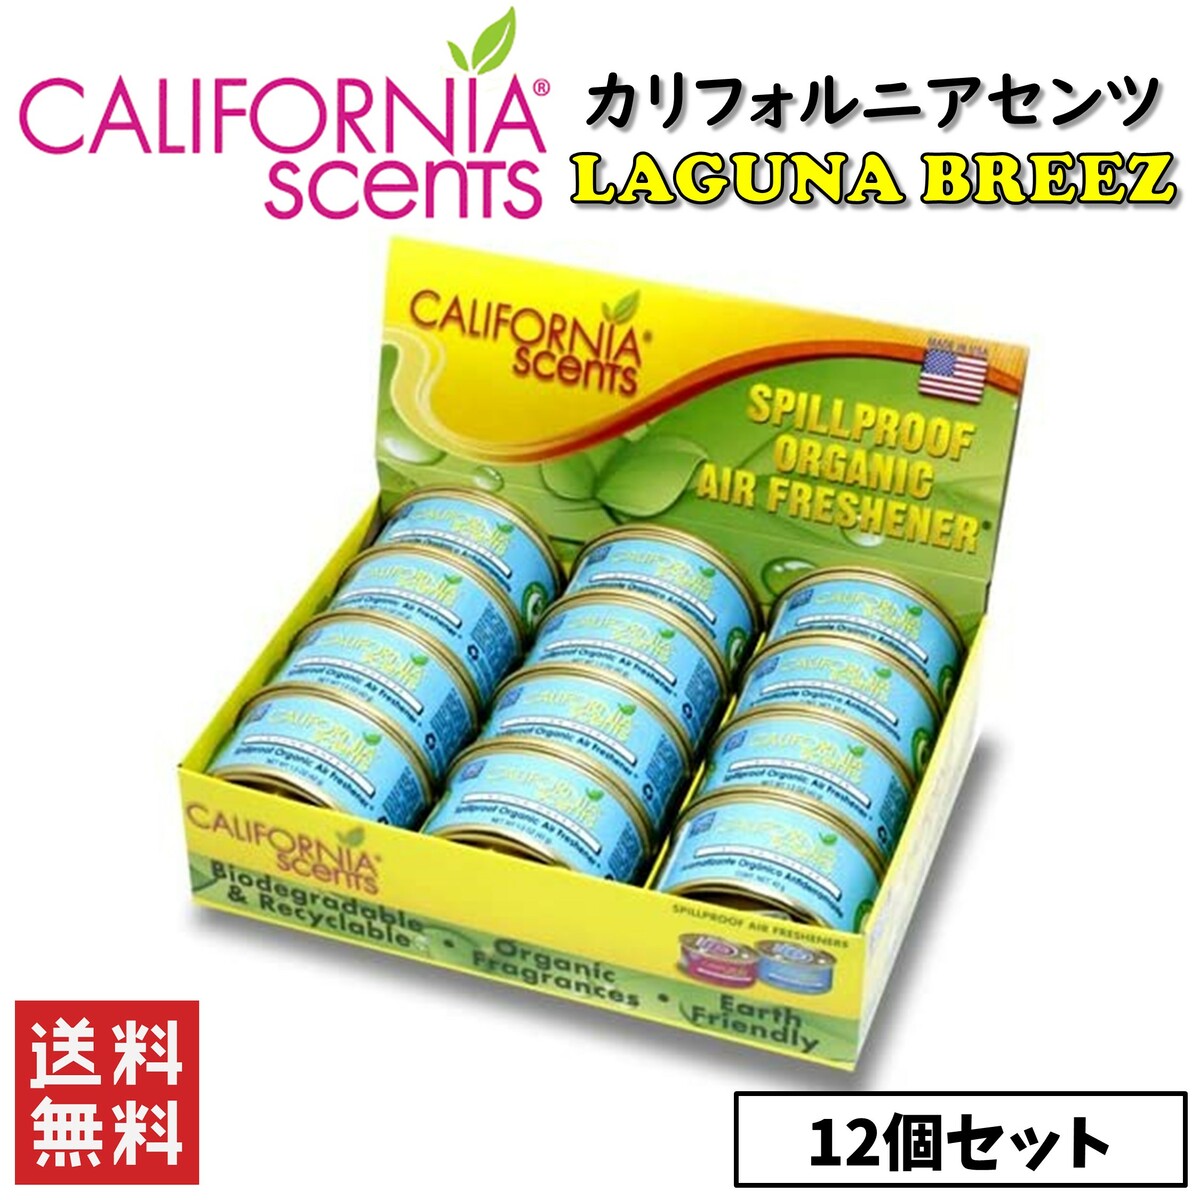 送料無料 全店販売中 CALIFORNIA SCENTS カリフォルニアセンツ ラグナブリーズ 12個セット カー用品 缶タイプ 芳香剤 評判 エアフレッシュナー 消臭